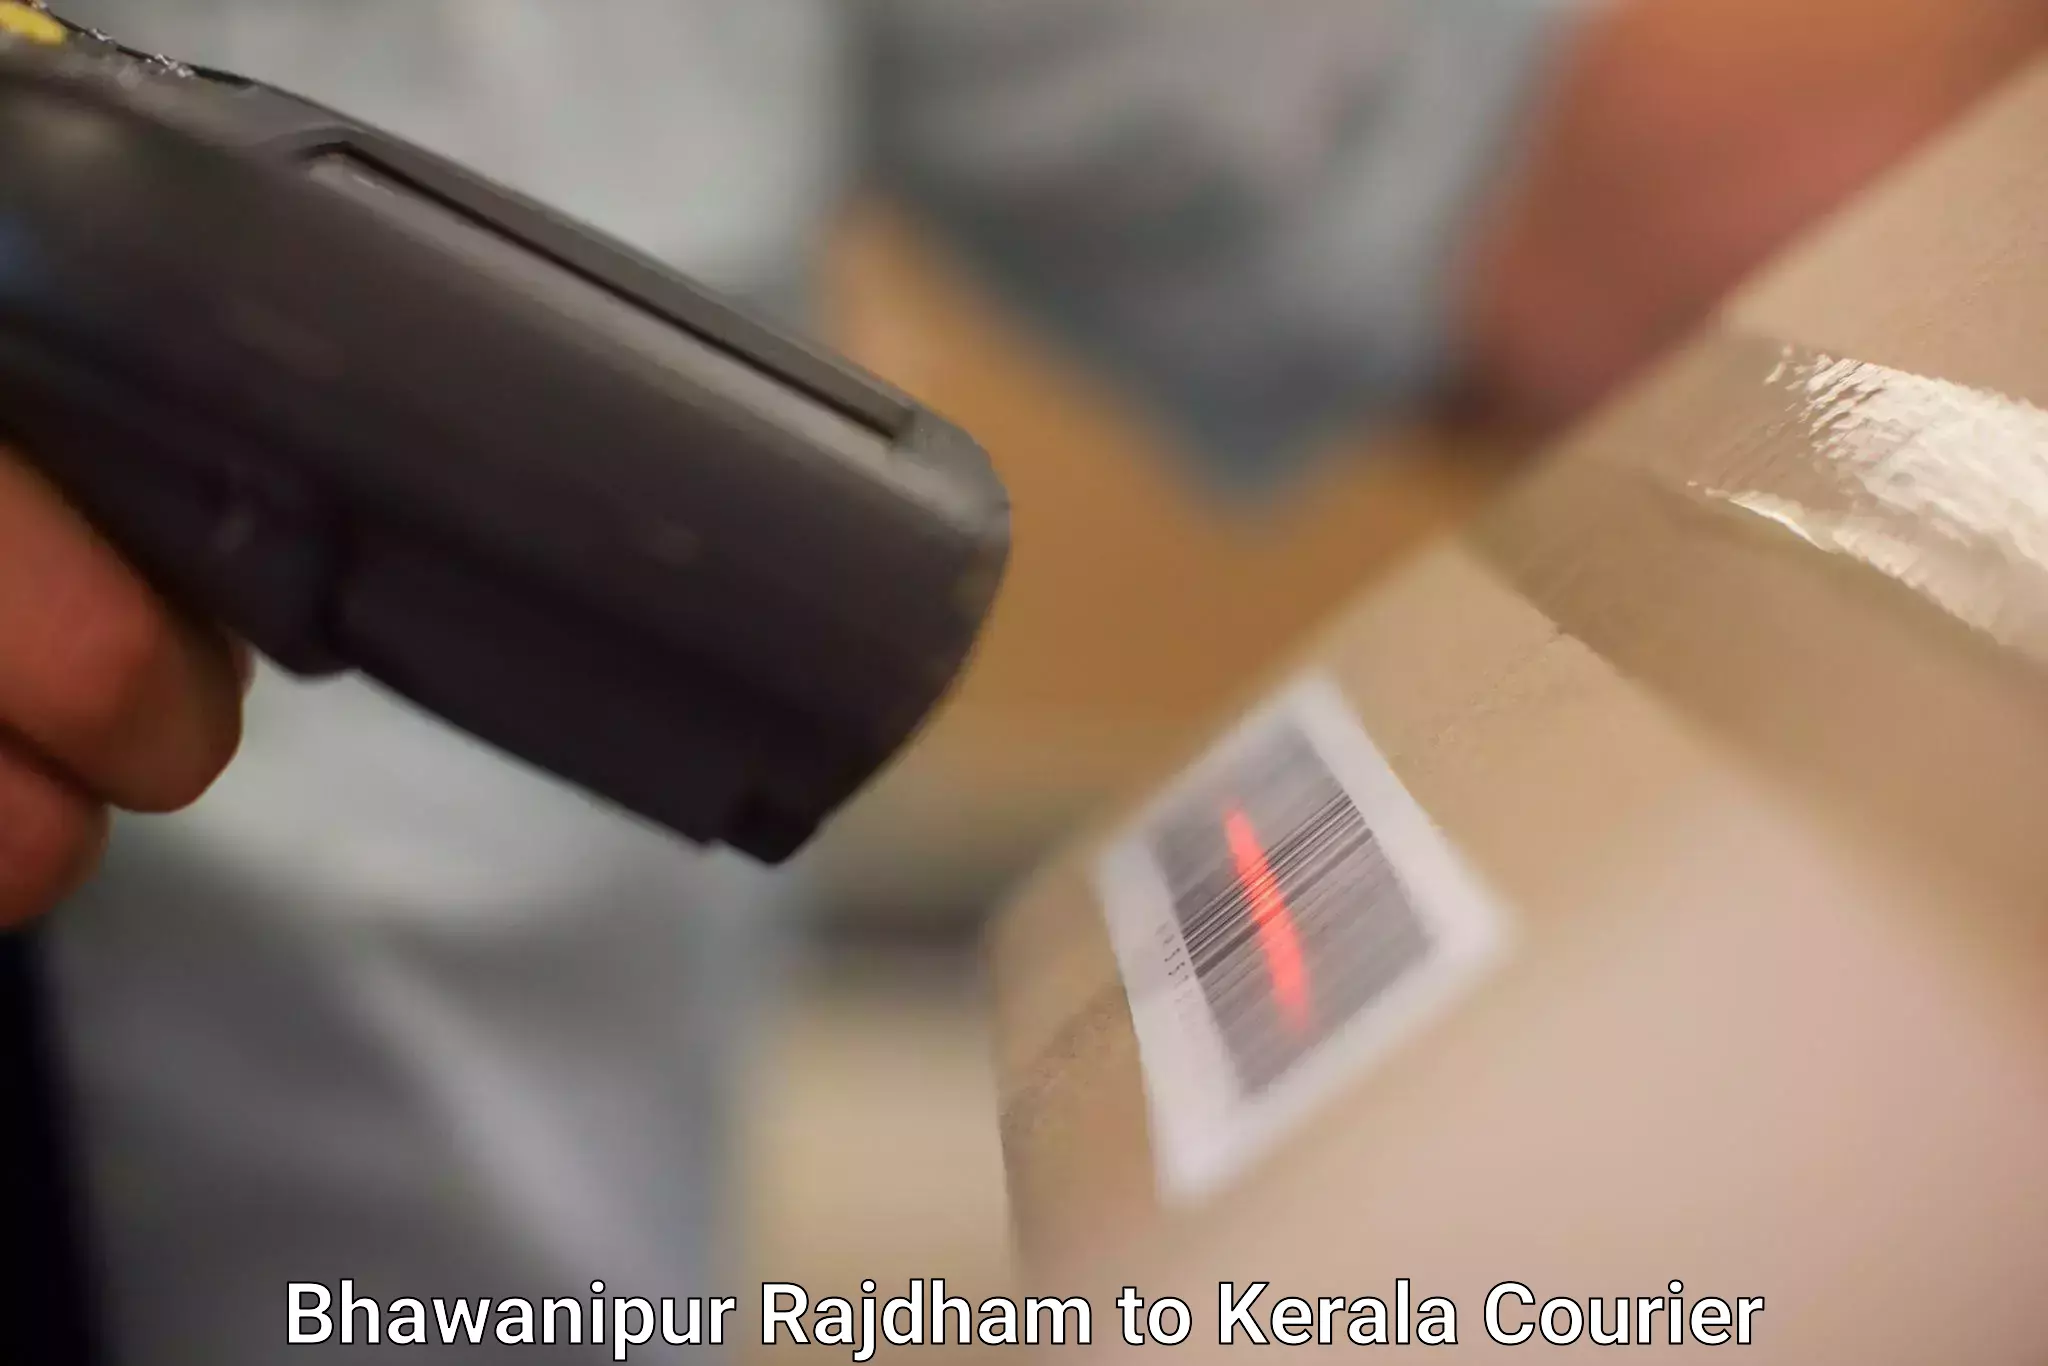 Efficient parcel service Bhawanipur Rajdham to Idukki